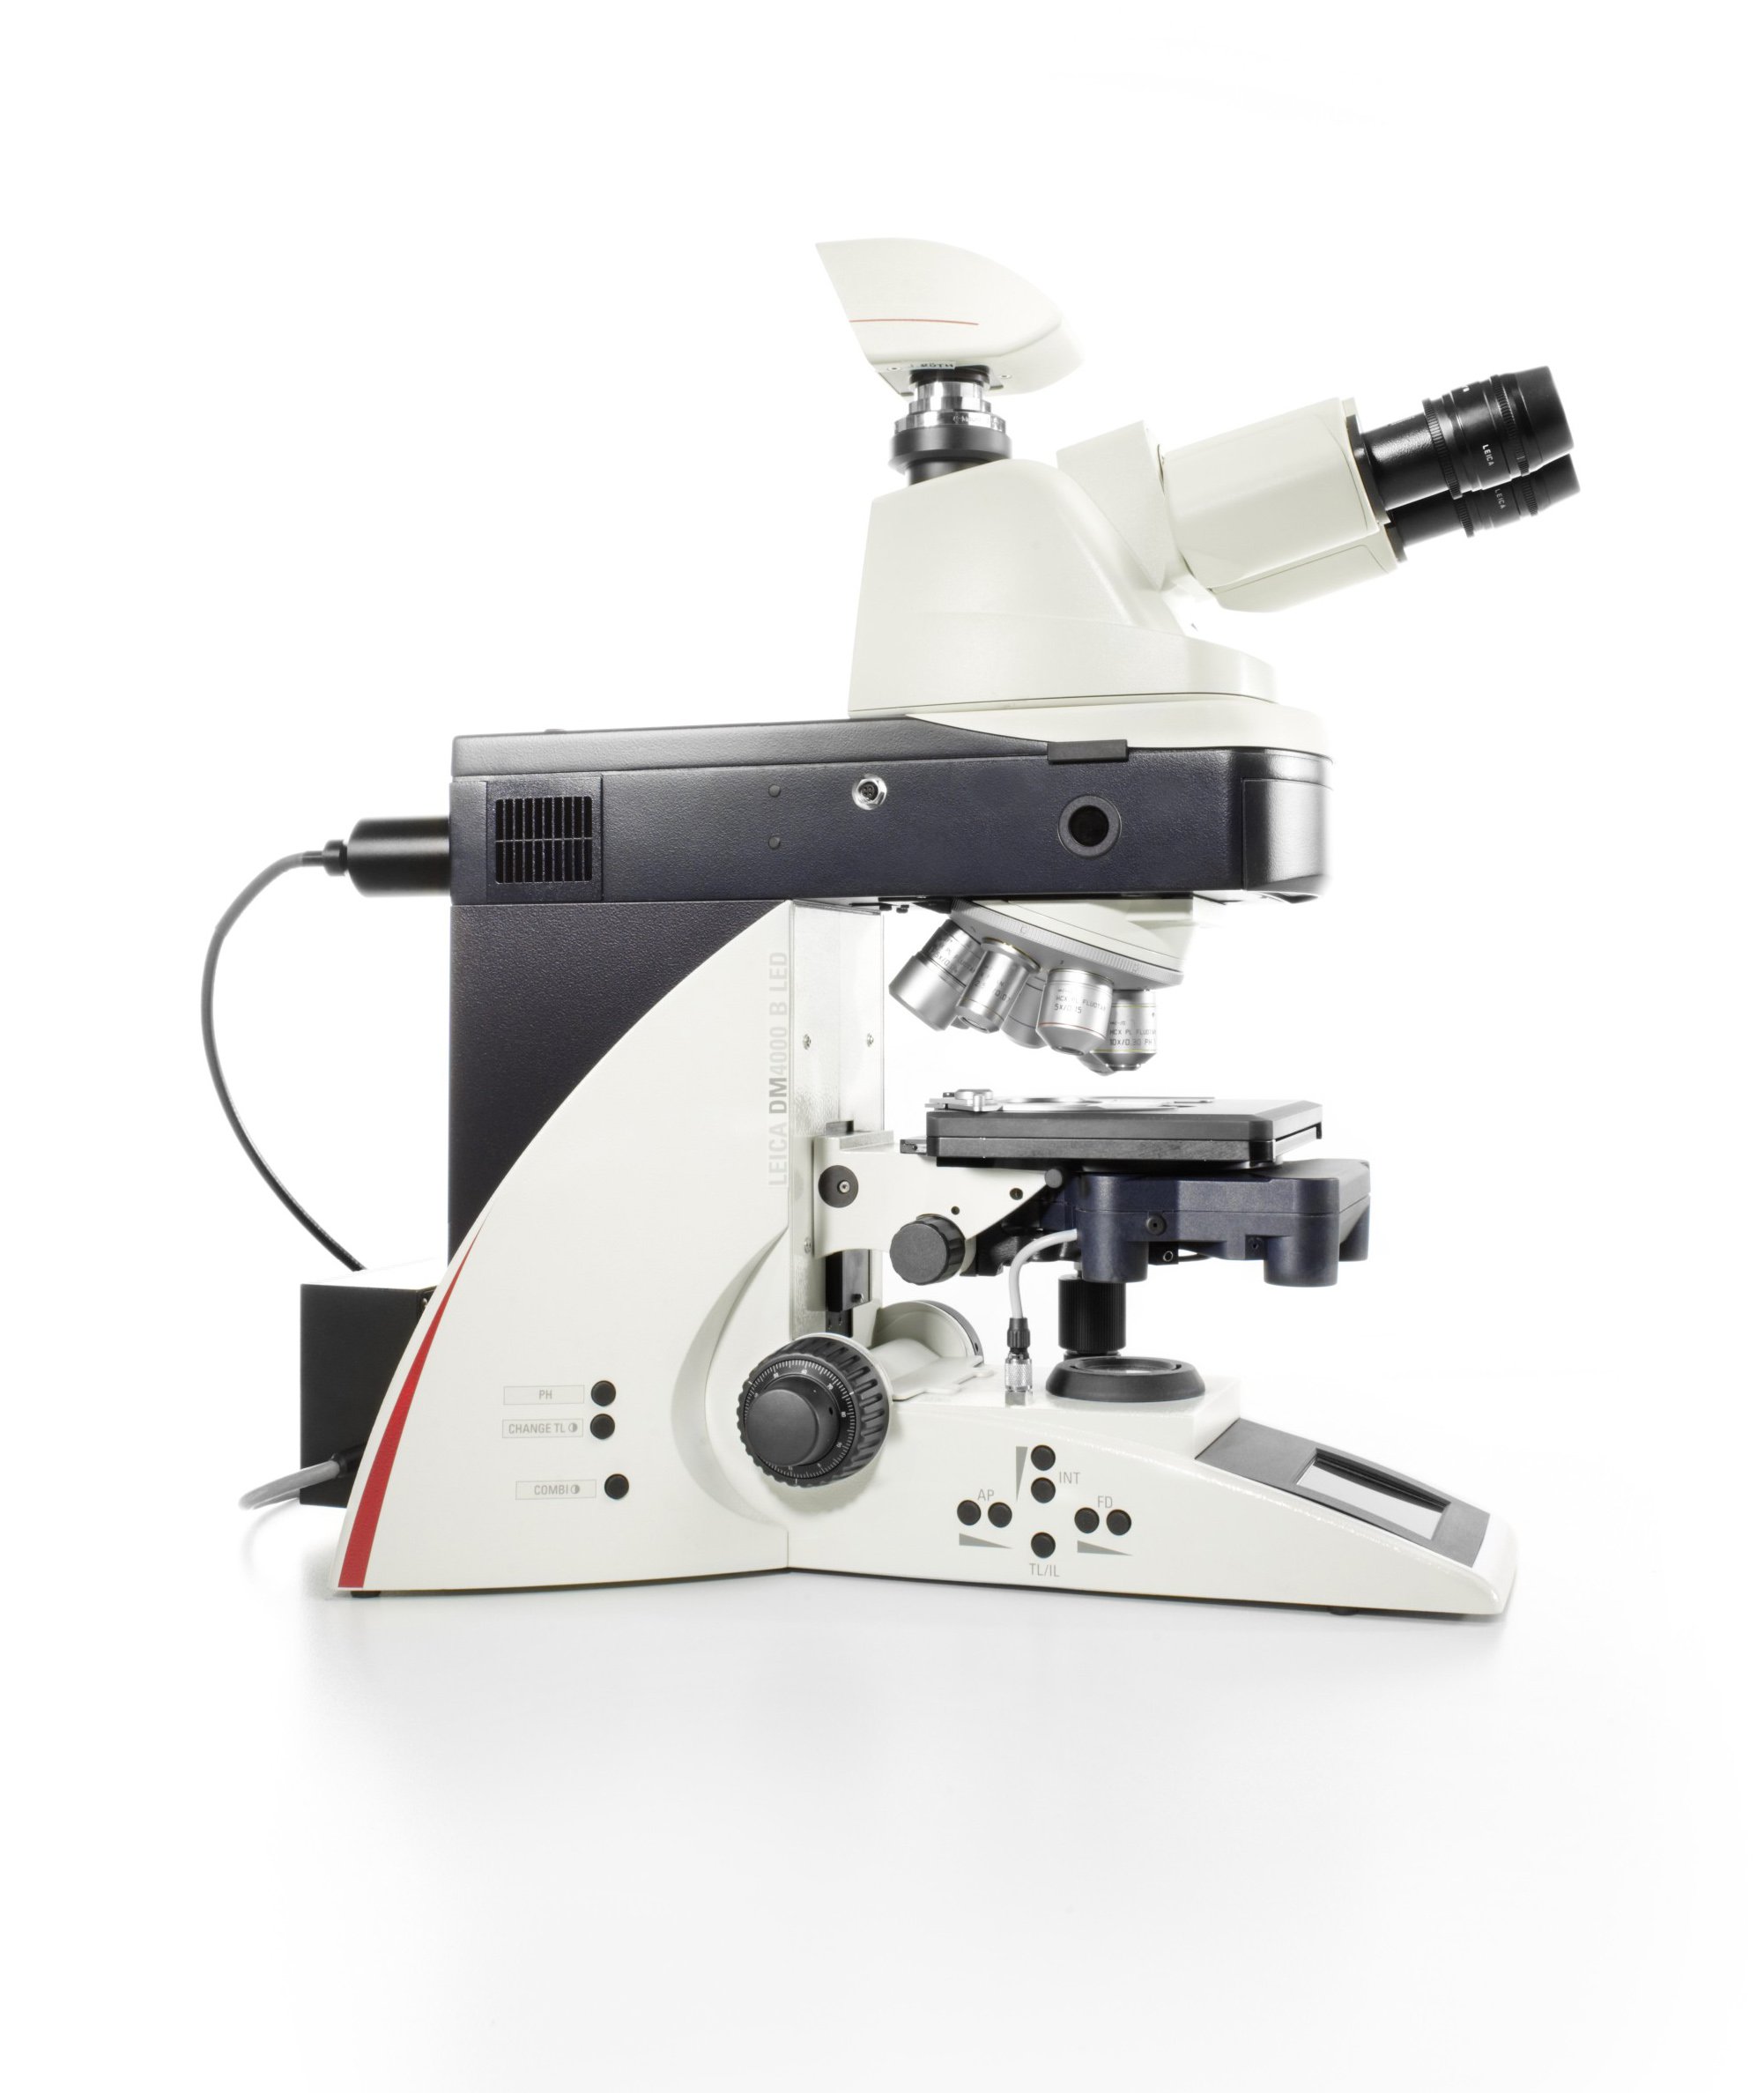 Sistema de microscópio vertical automatizado com iluminação a LED para ciências biológicas